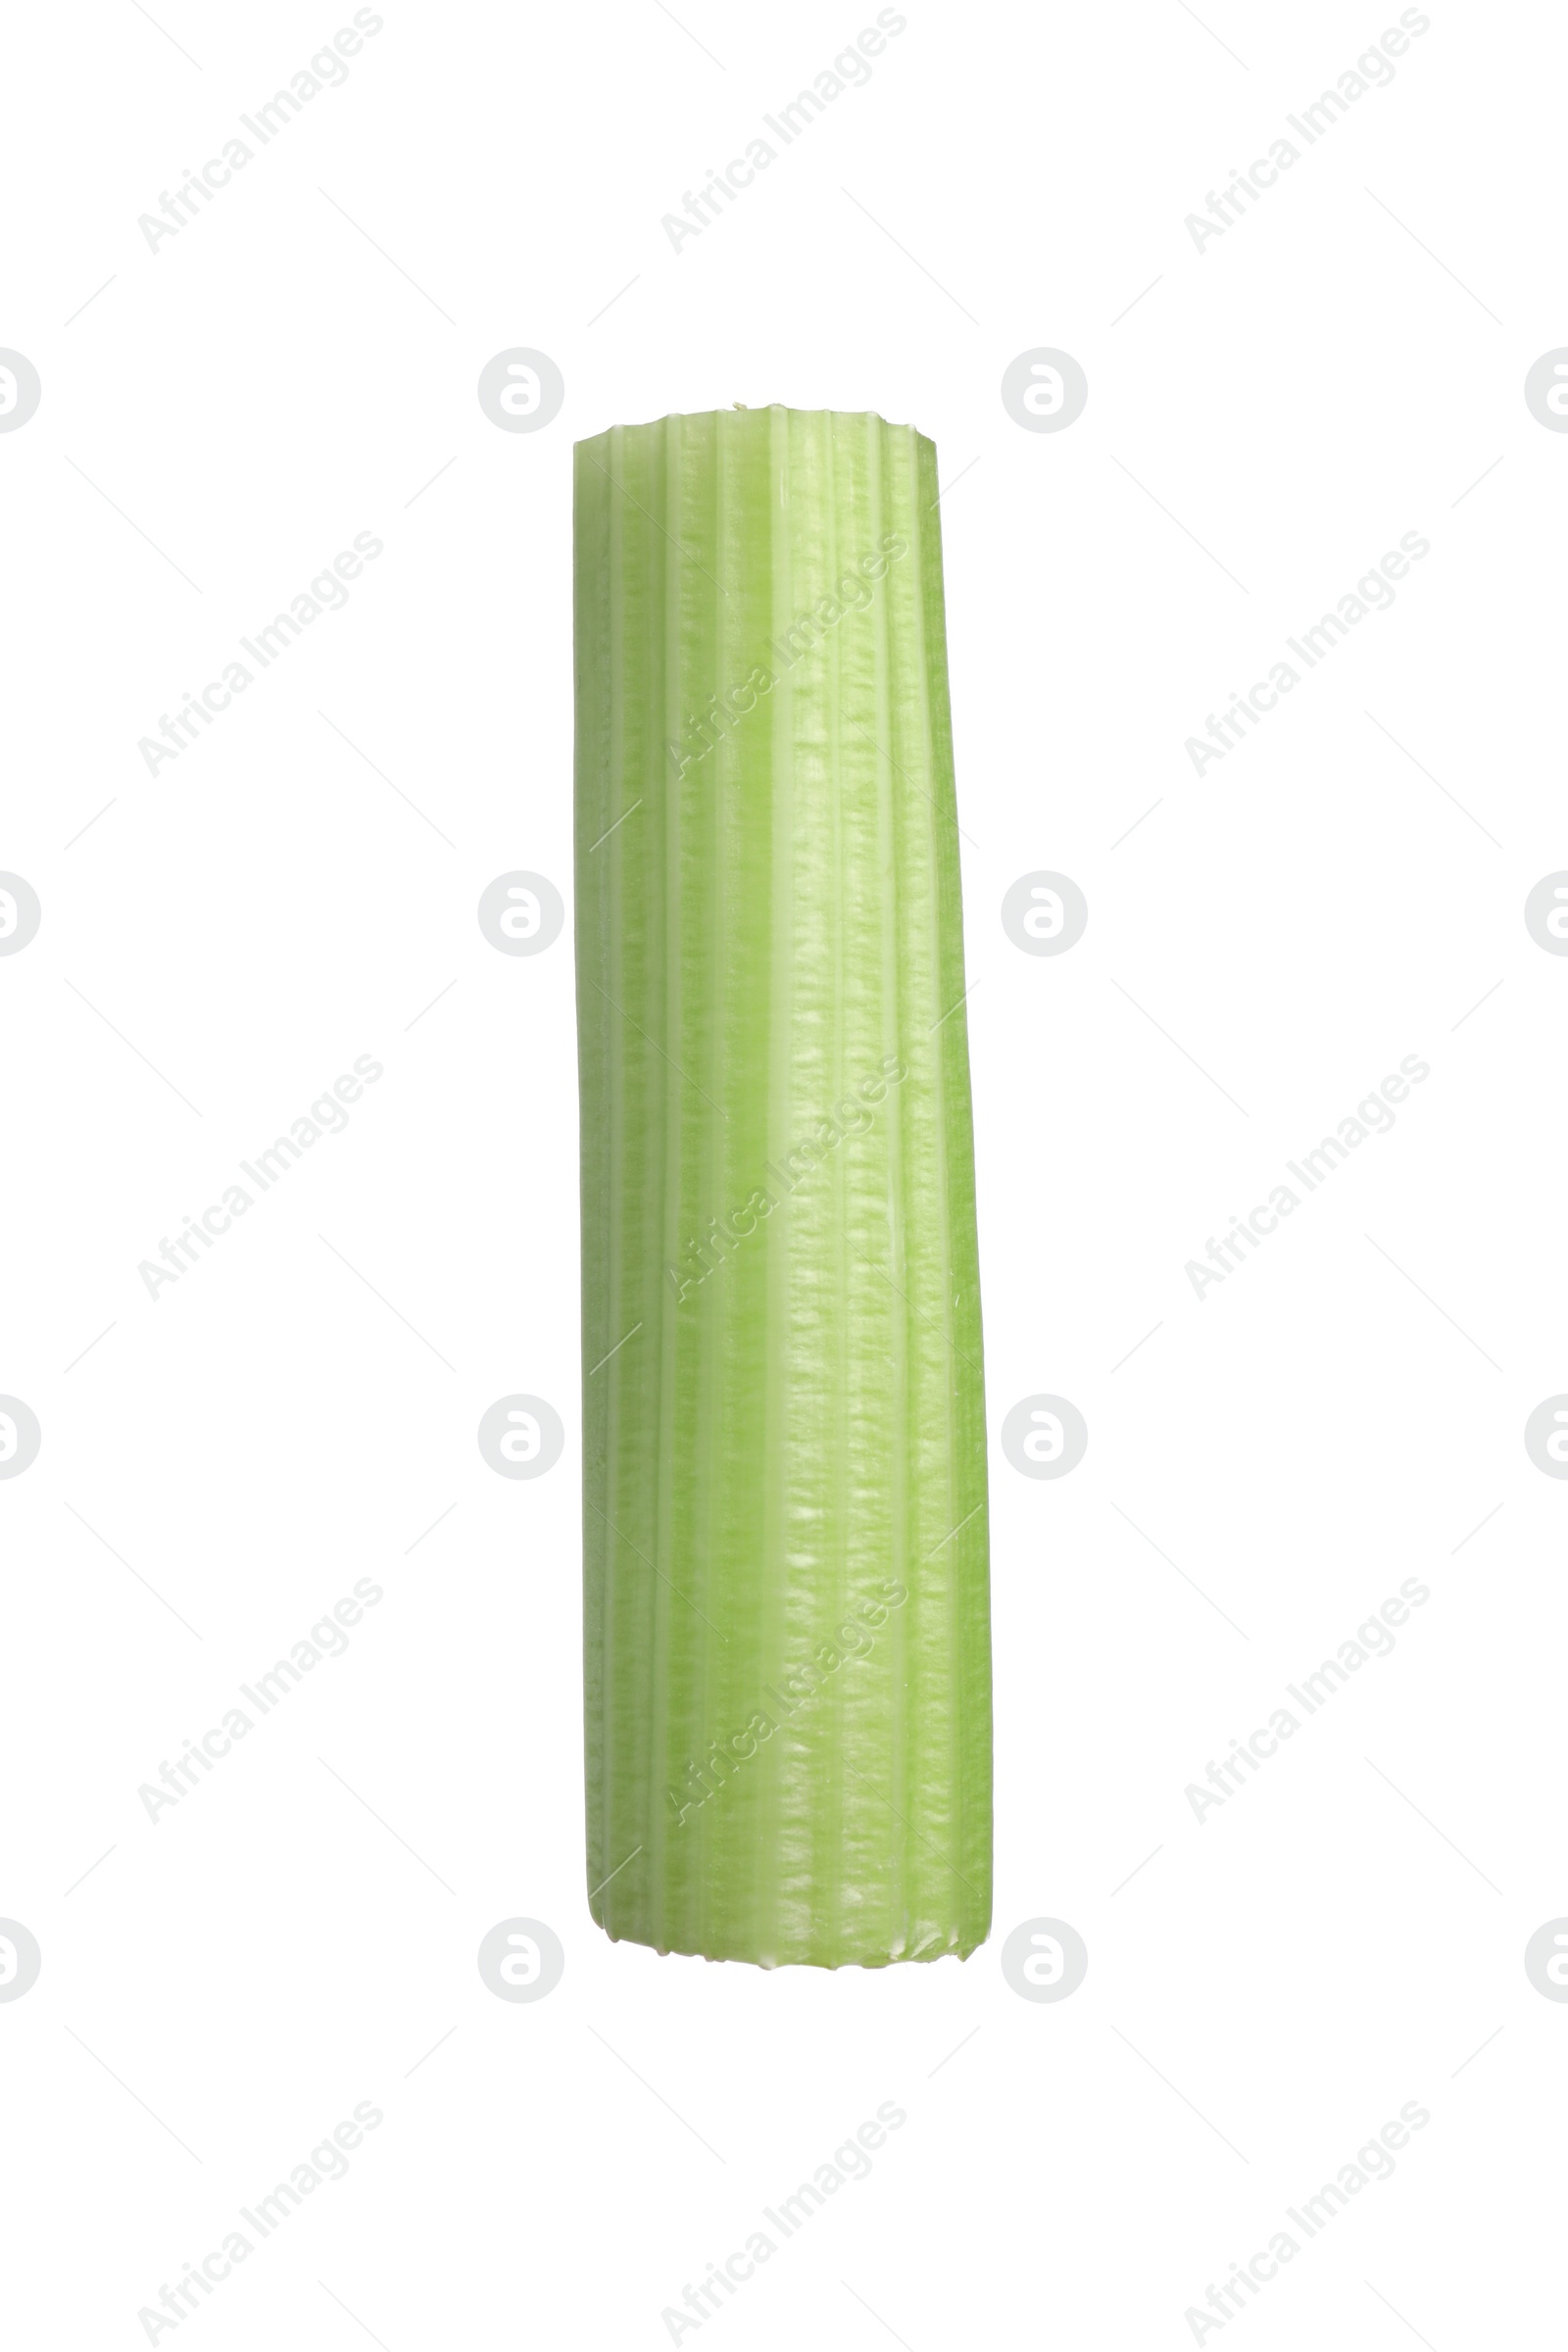 Photo of One slice of fresh celery stalk isolated on white